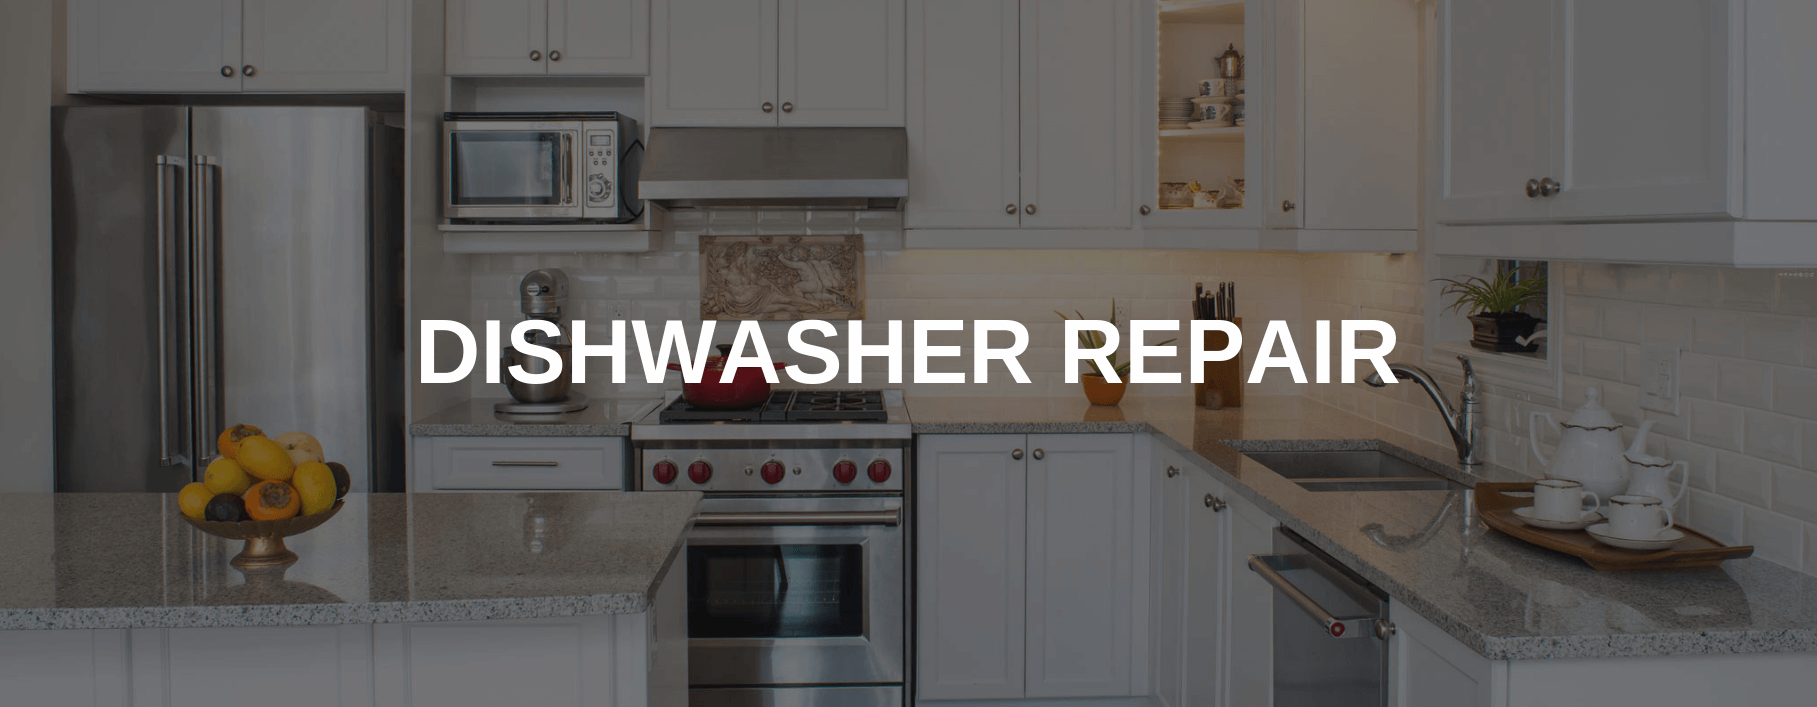 dishwasher repair Guilford